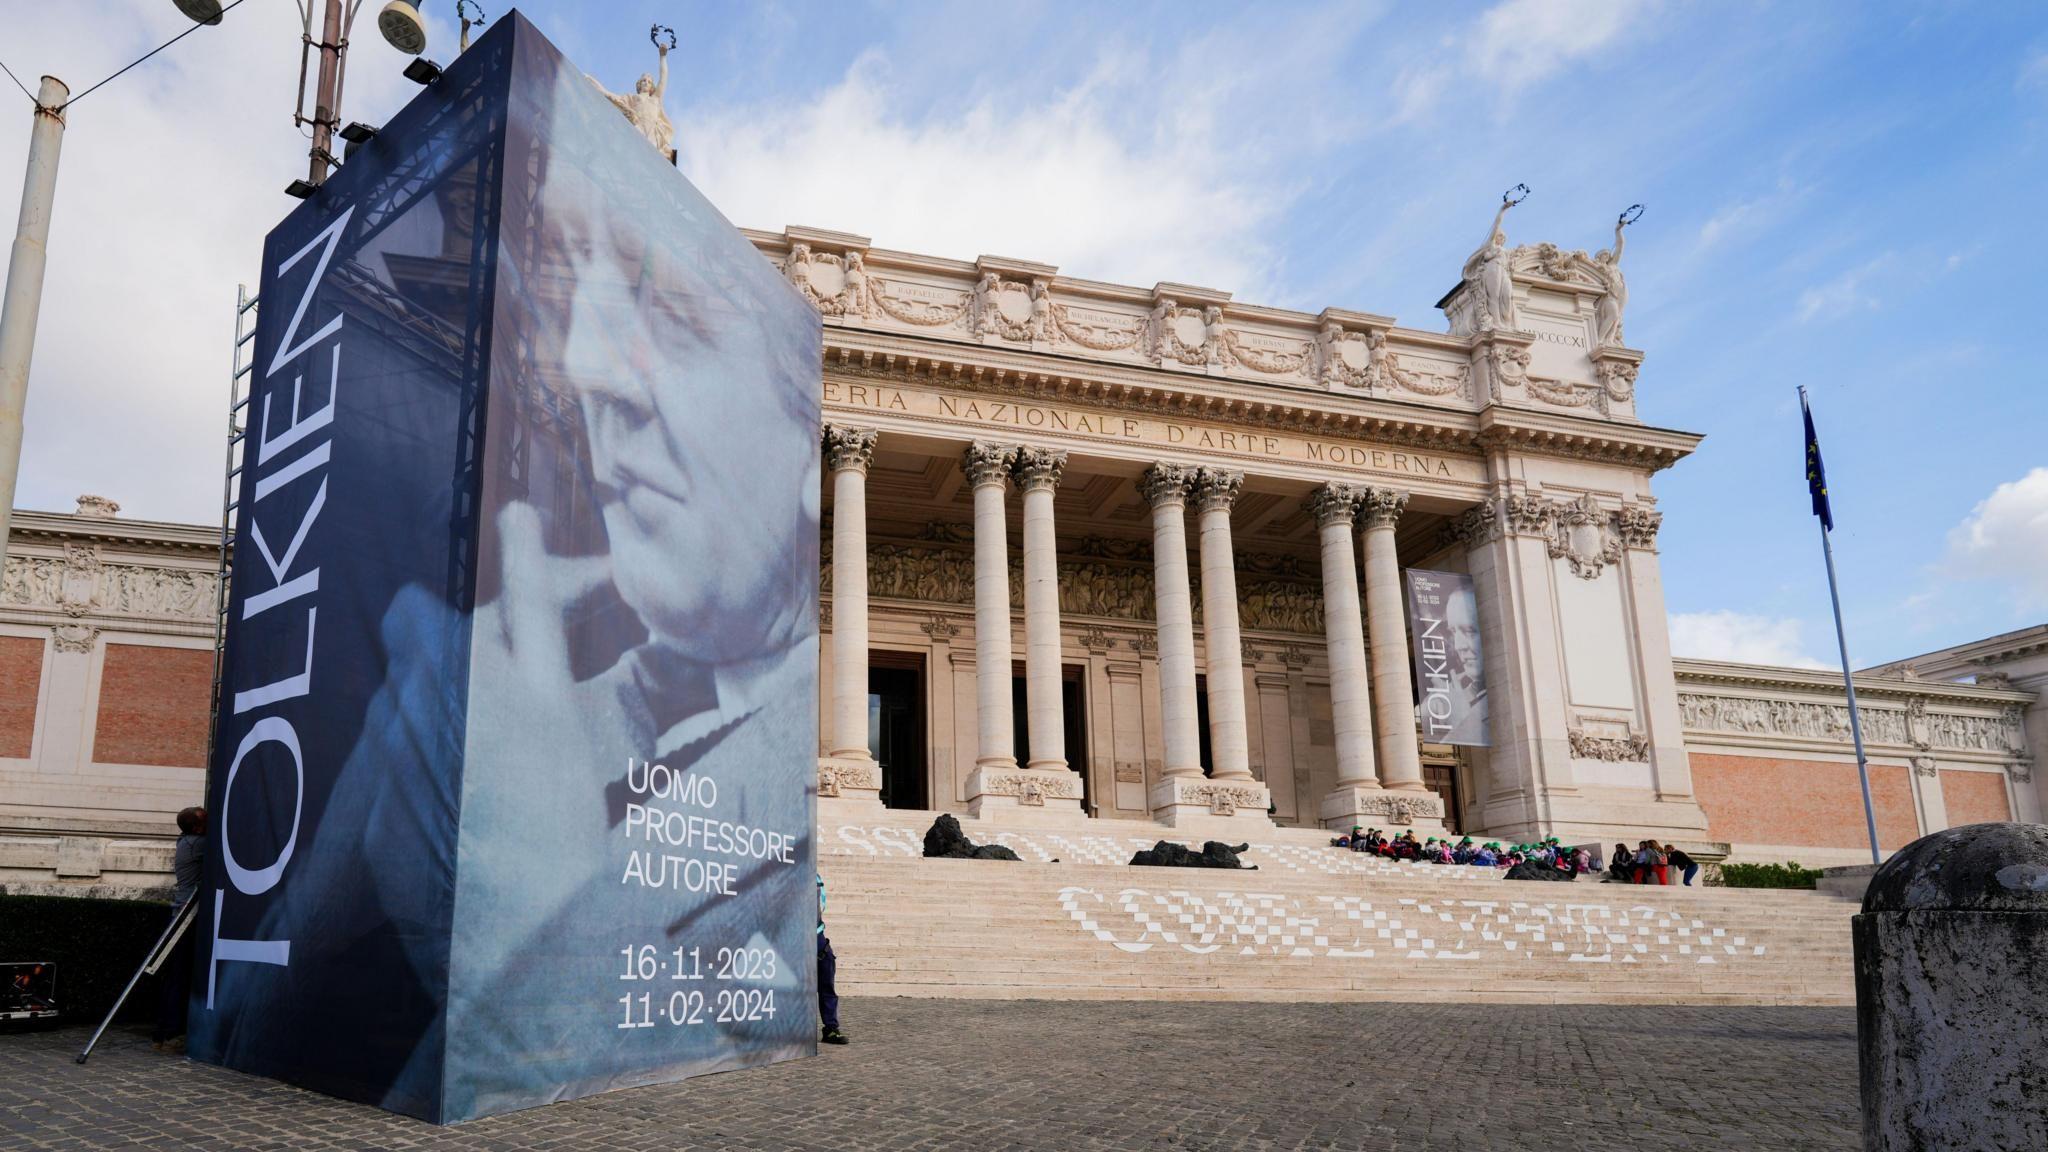 La Galería Nacional de Arte Moderno de Roma.